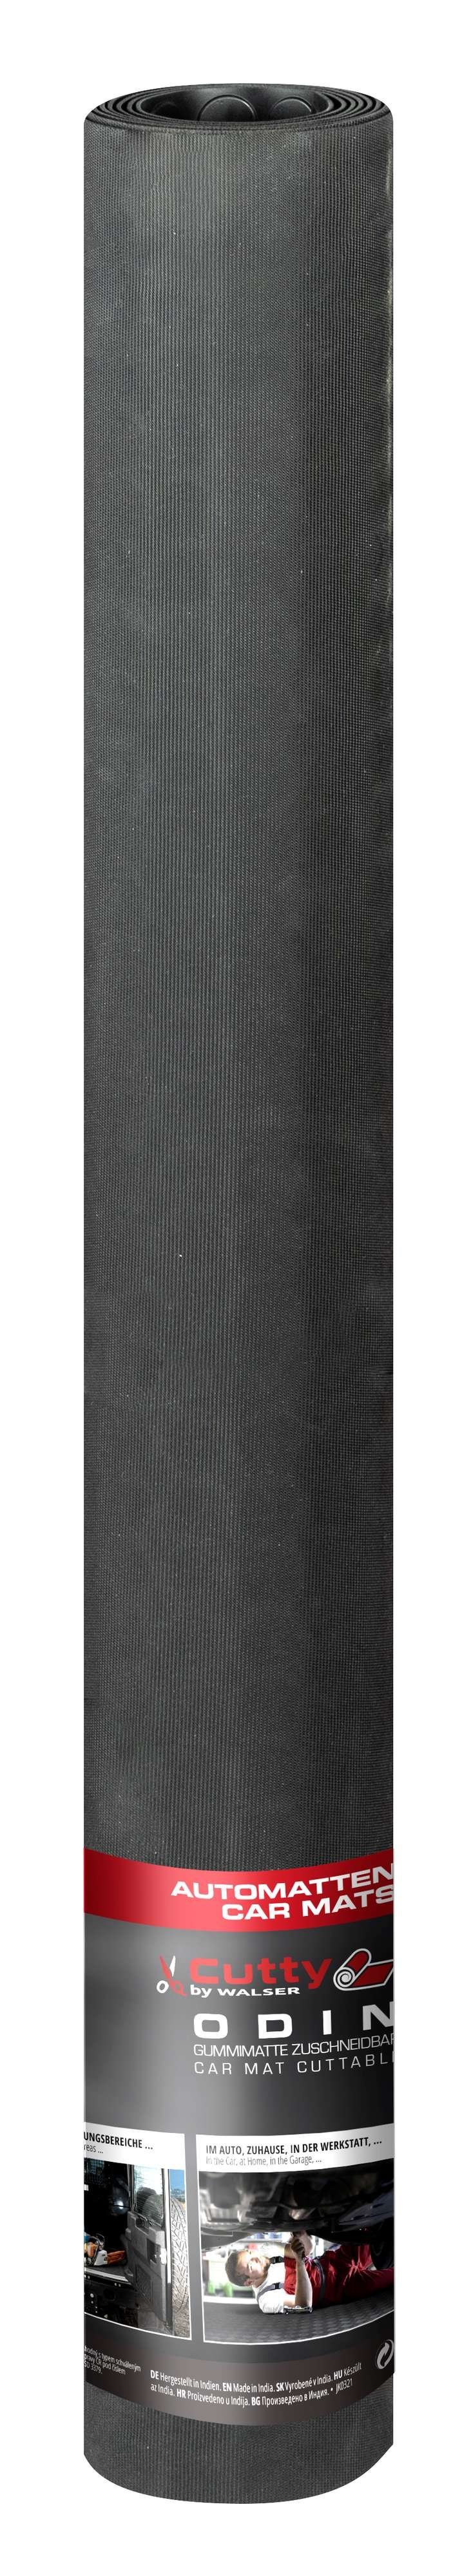 Automat Odin geribbeld, op maat gesneden automat 150x100 cm, universele beschermmat, kofferbakmat, vuilvangmat zwart